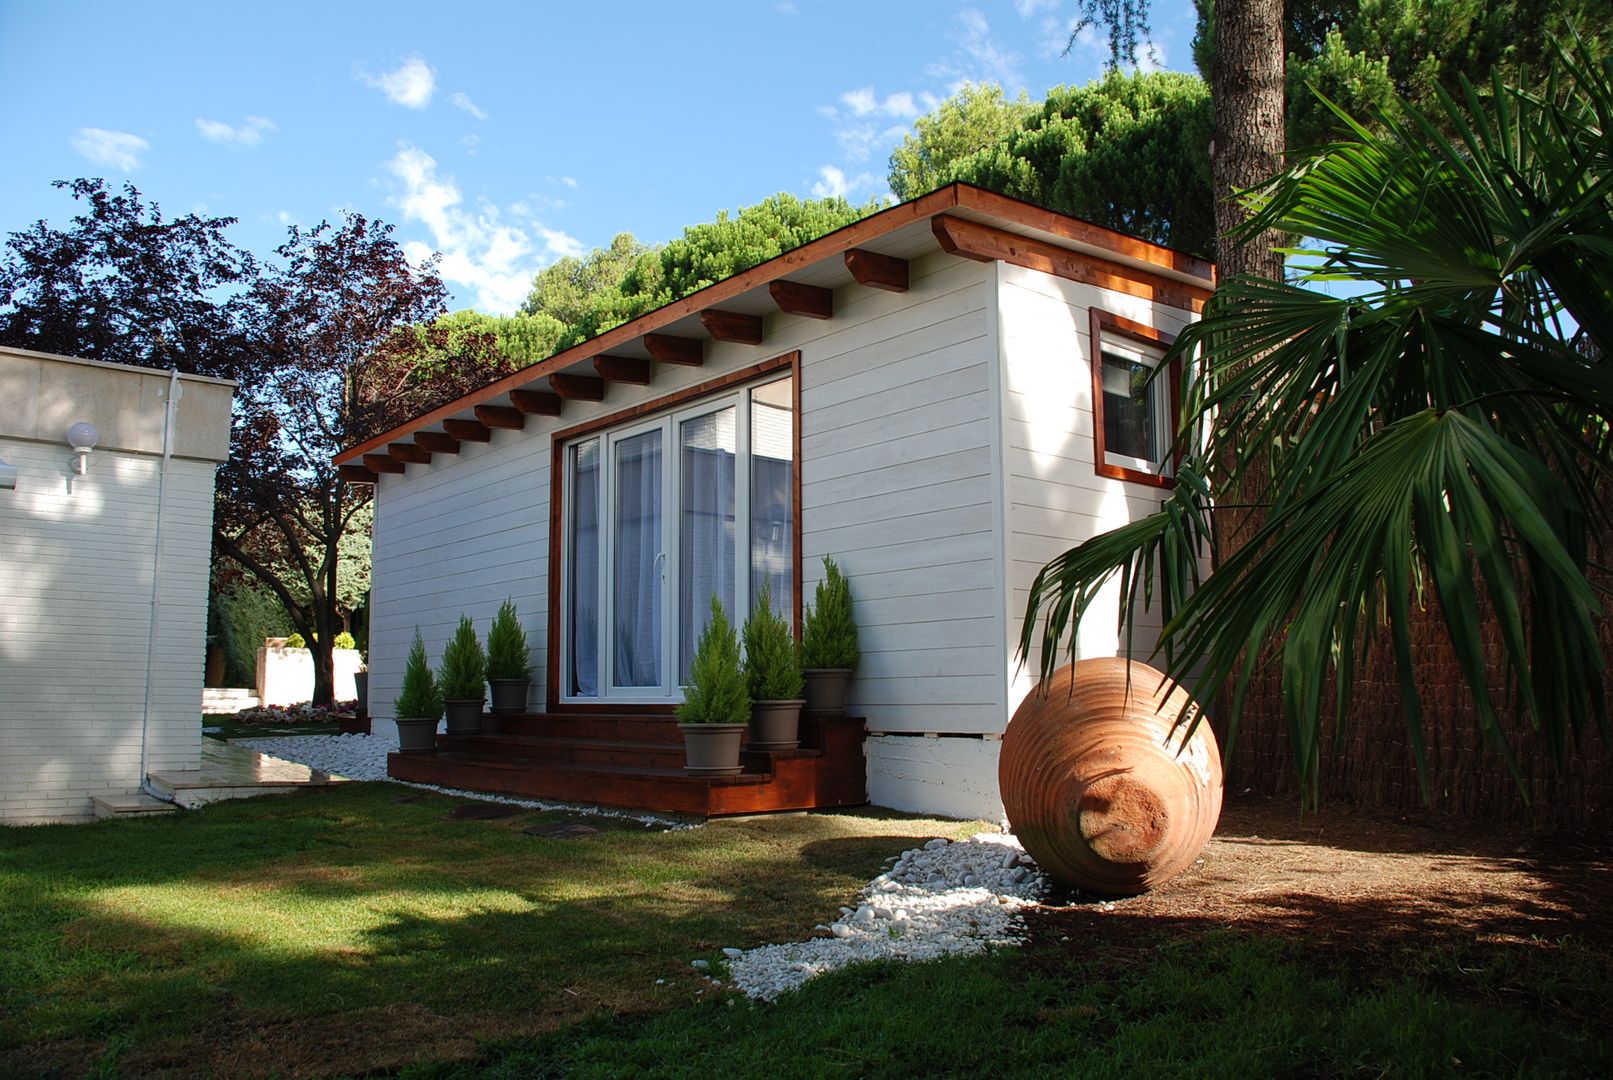 Caseta habitable de madera, Construcción de casetas de Madera en Madrid Construcción de casetas de Madera en Madrid منزل خشبي